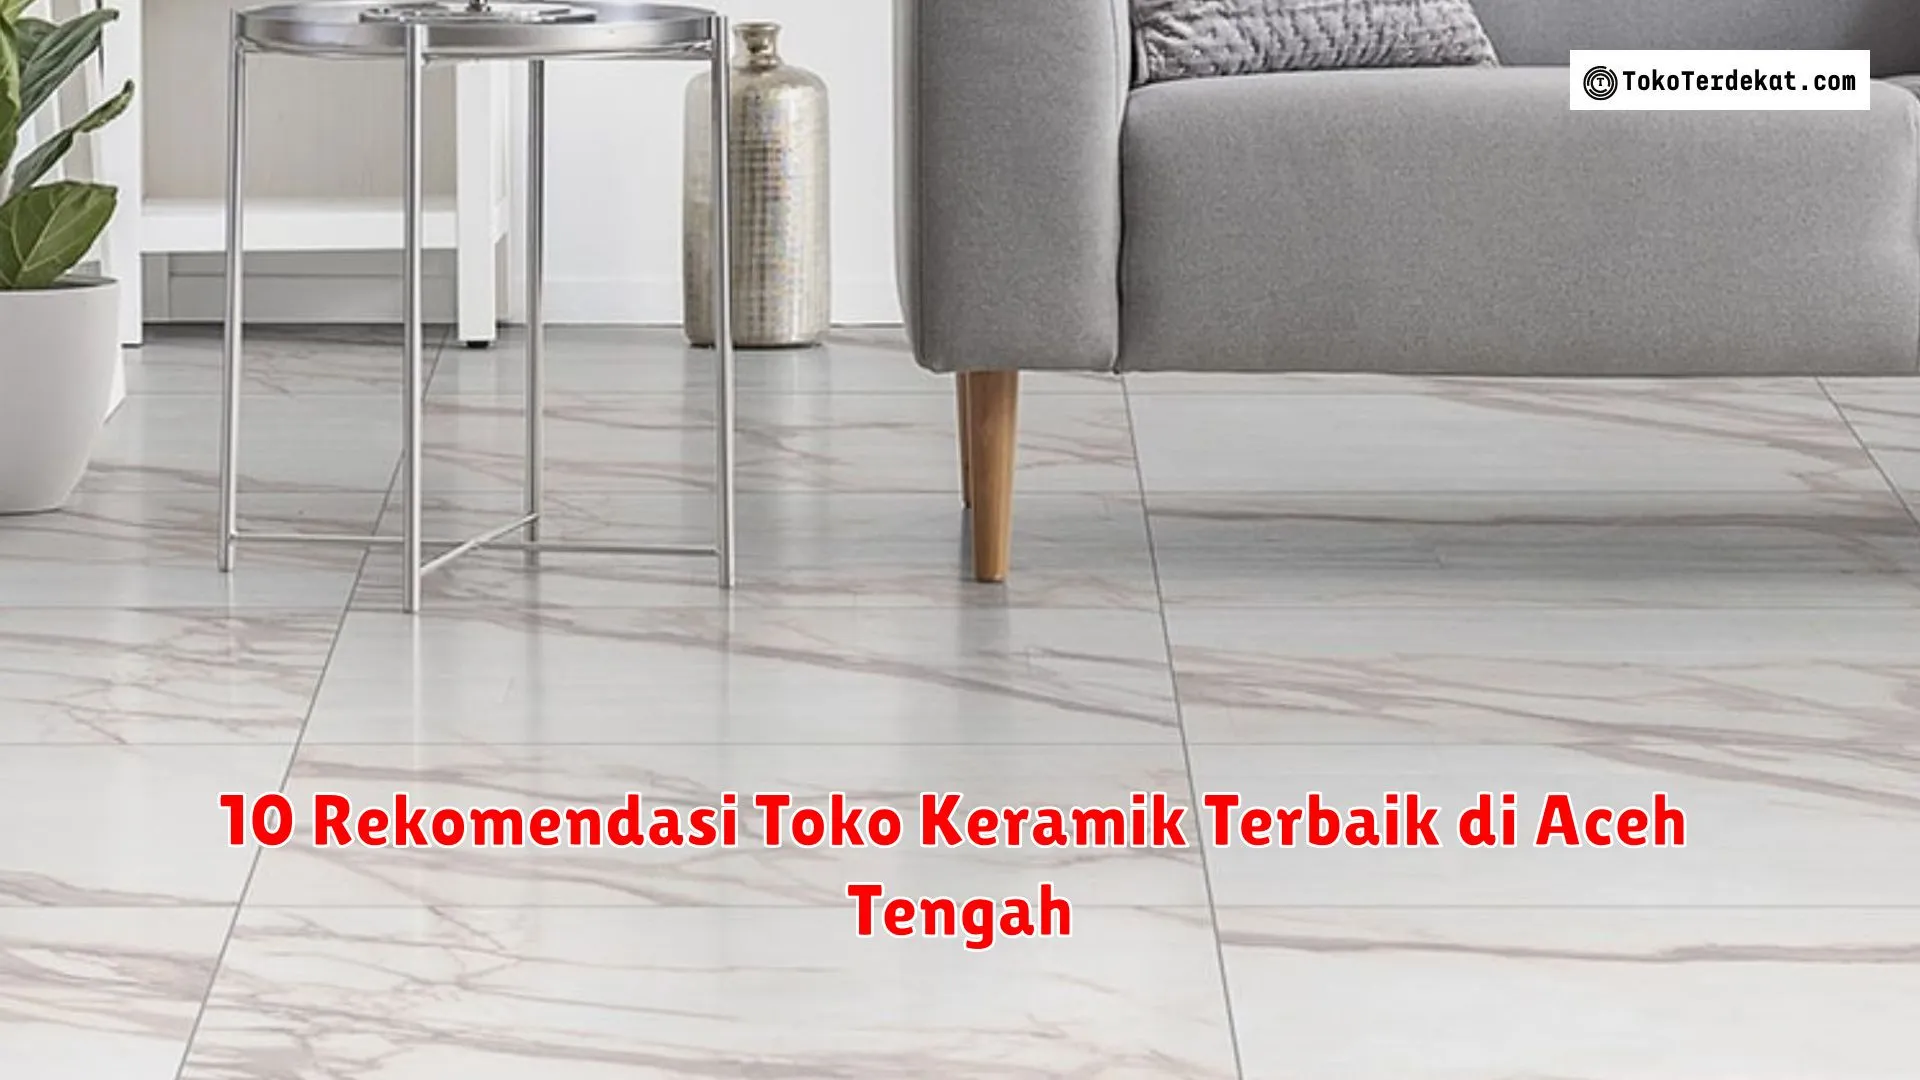 10 Rekomendasi Toko Keramik Terbaik di Aceh Tengah